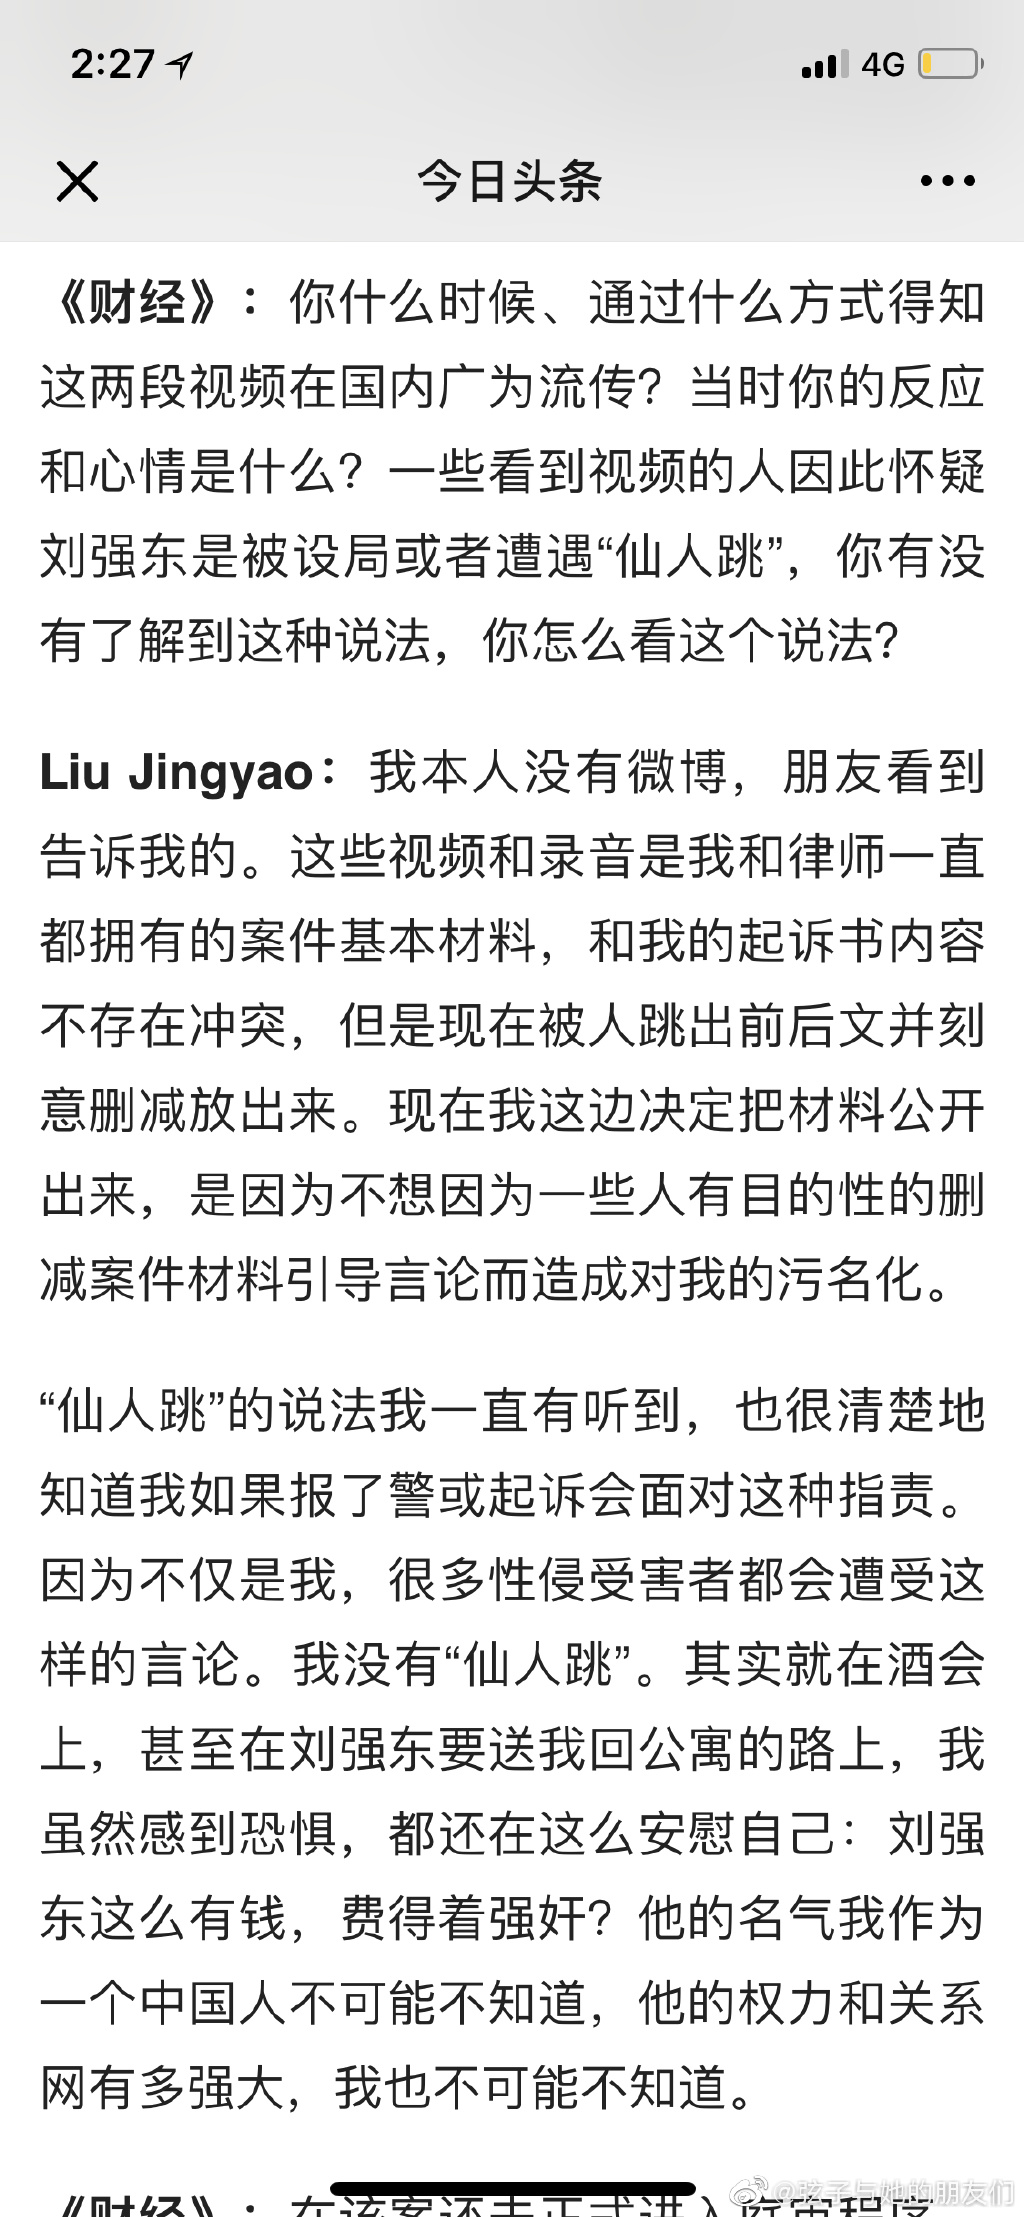 财经网对Jingyao的采访也刊登出了，采访透露几个信息